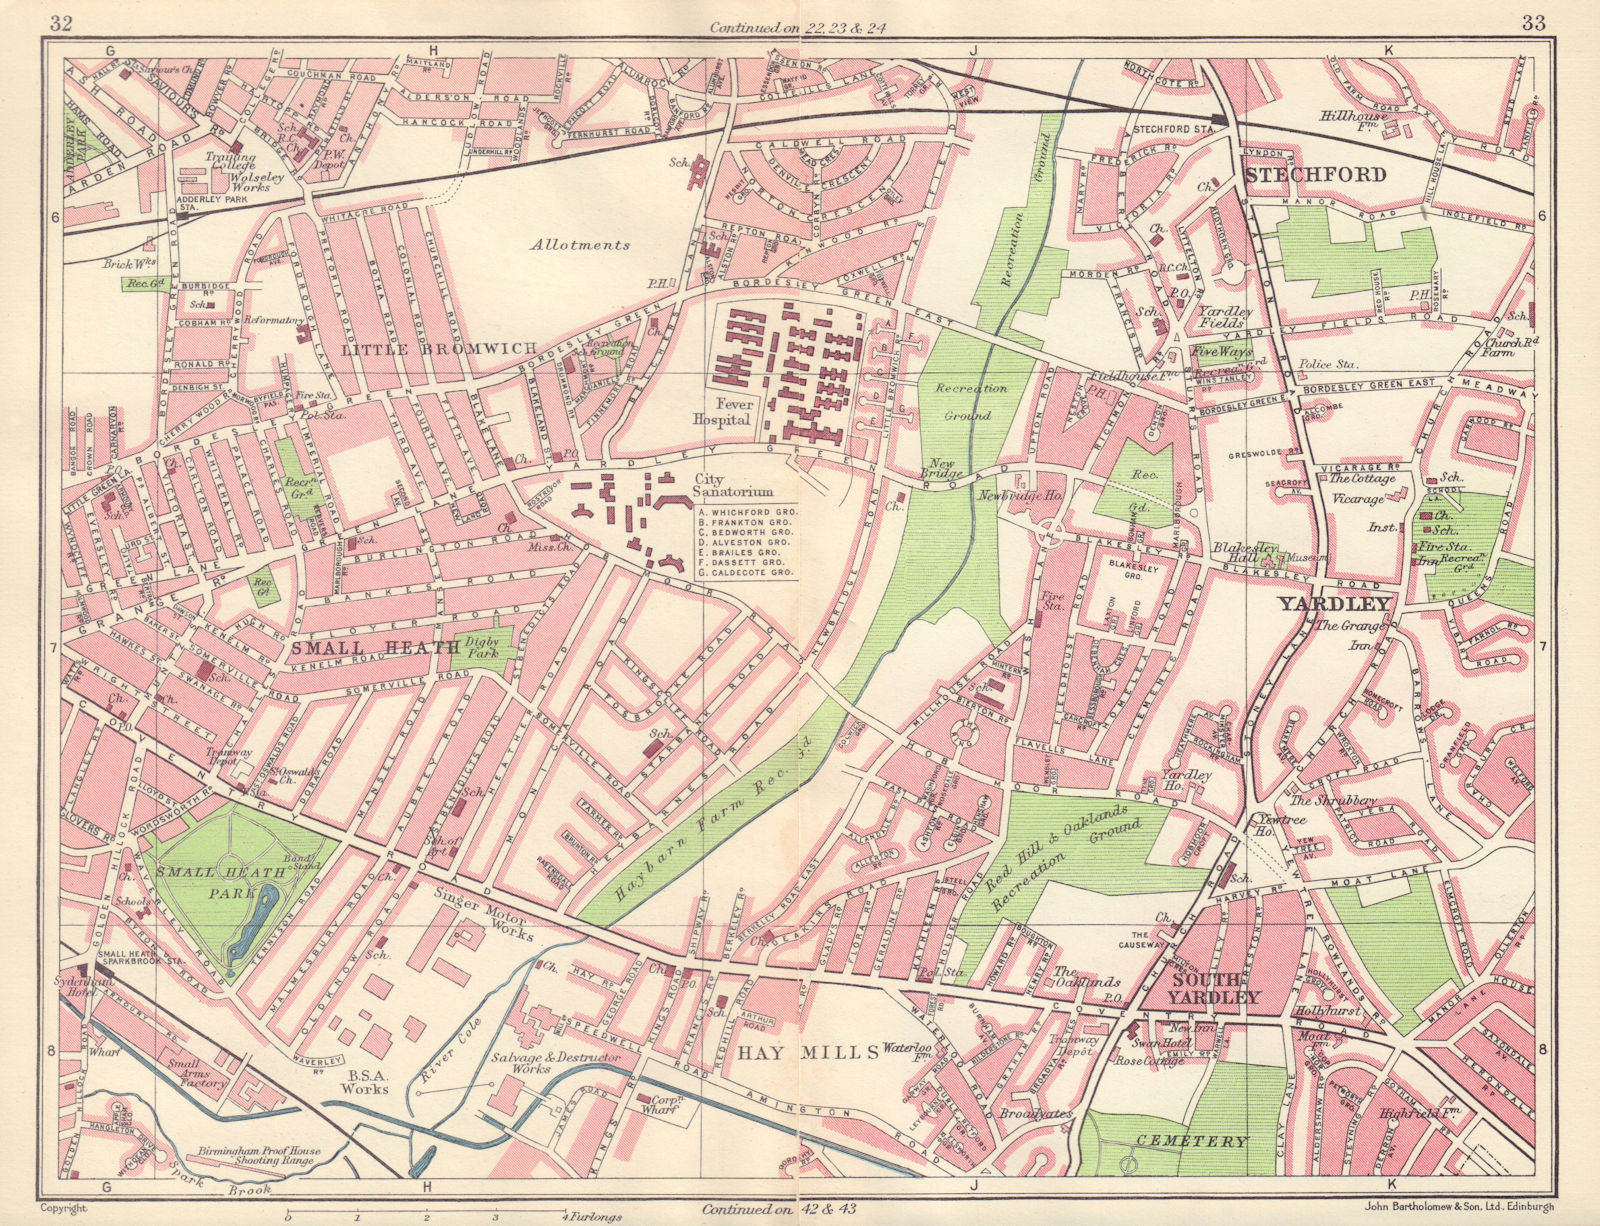 BIRMINGHAM EAST Little Bromwich Small Heath Yardley Hay Mills Stechford 1954 map